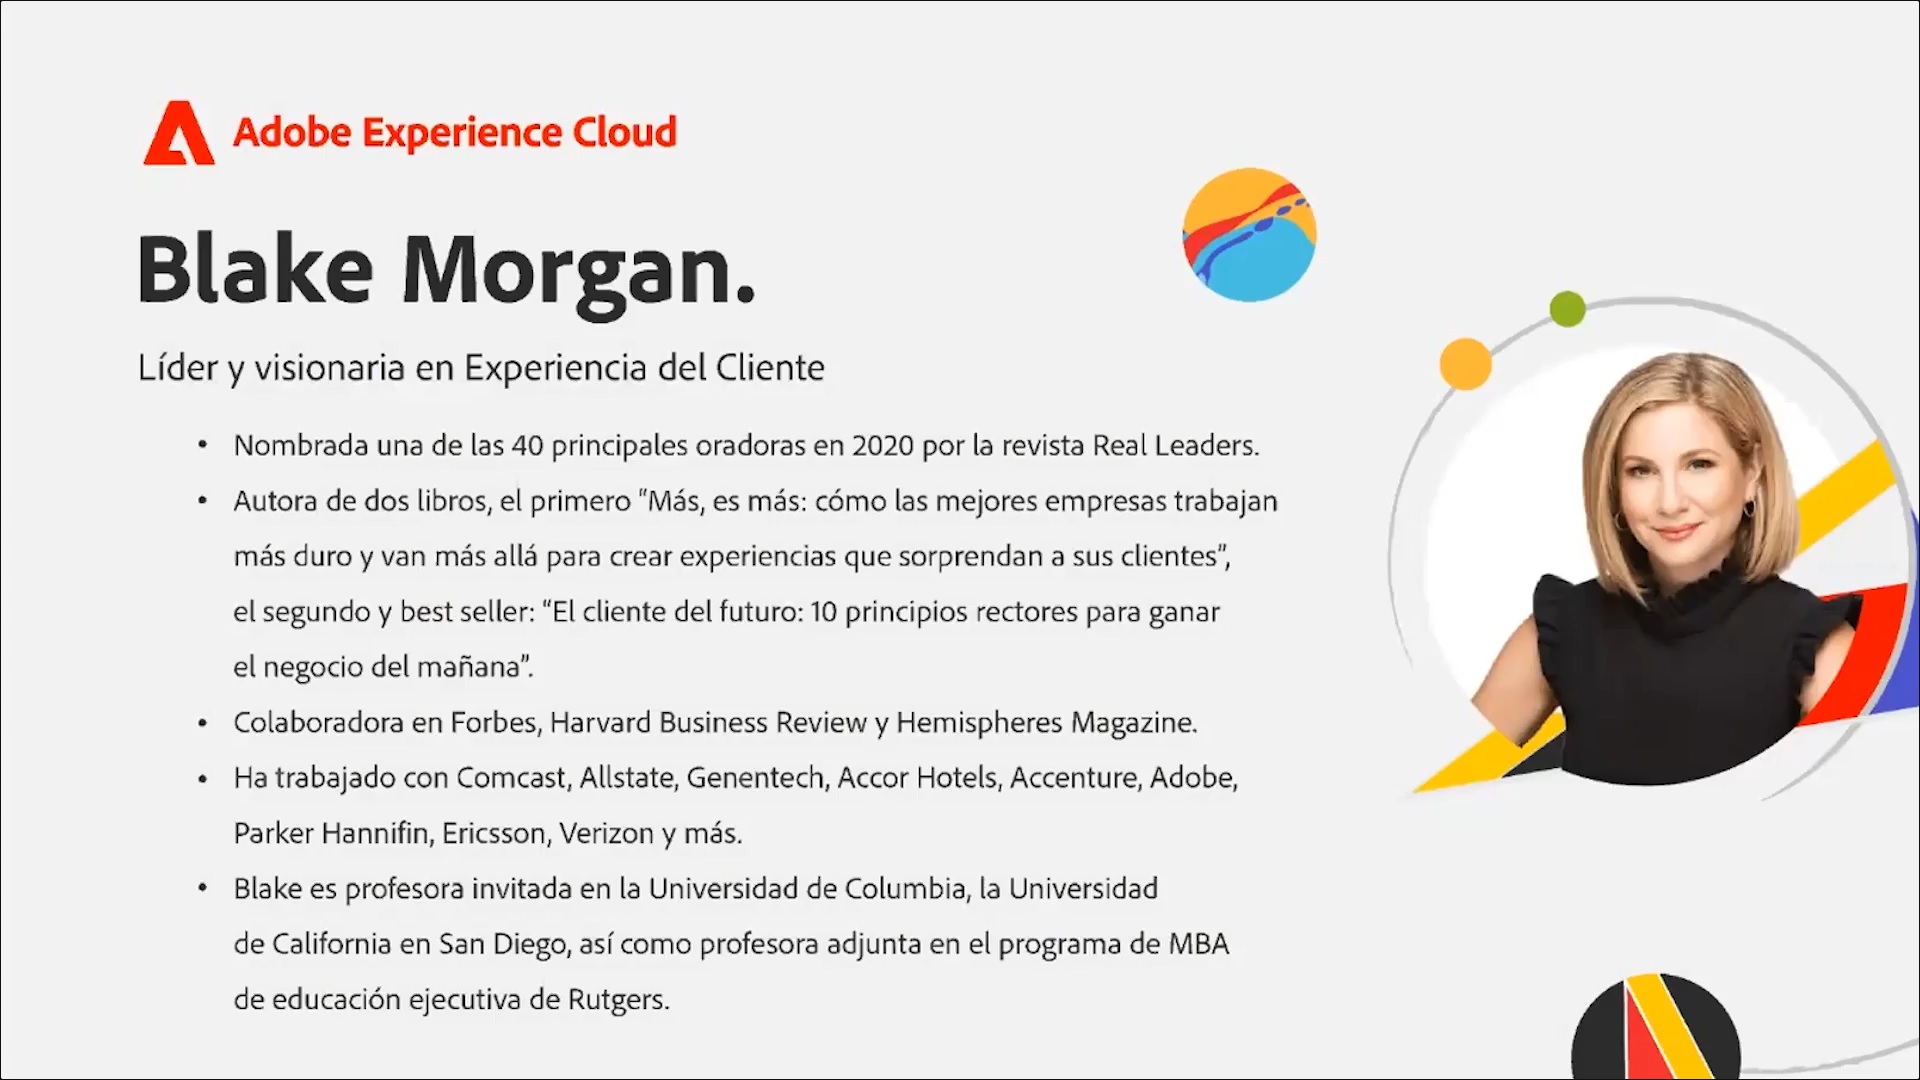 Según Blake Morgan, experta en CX (Customer Experience por sus siglas en inglés), el mejor márketing que puede hacer una empresa es la forma